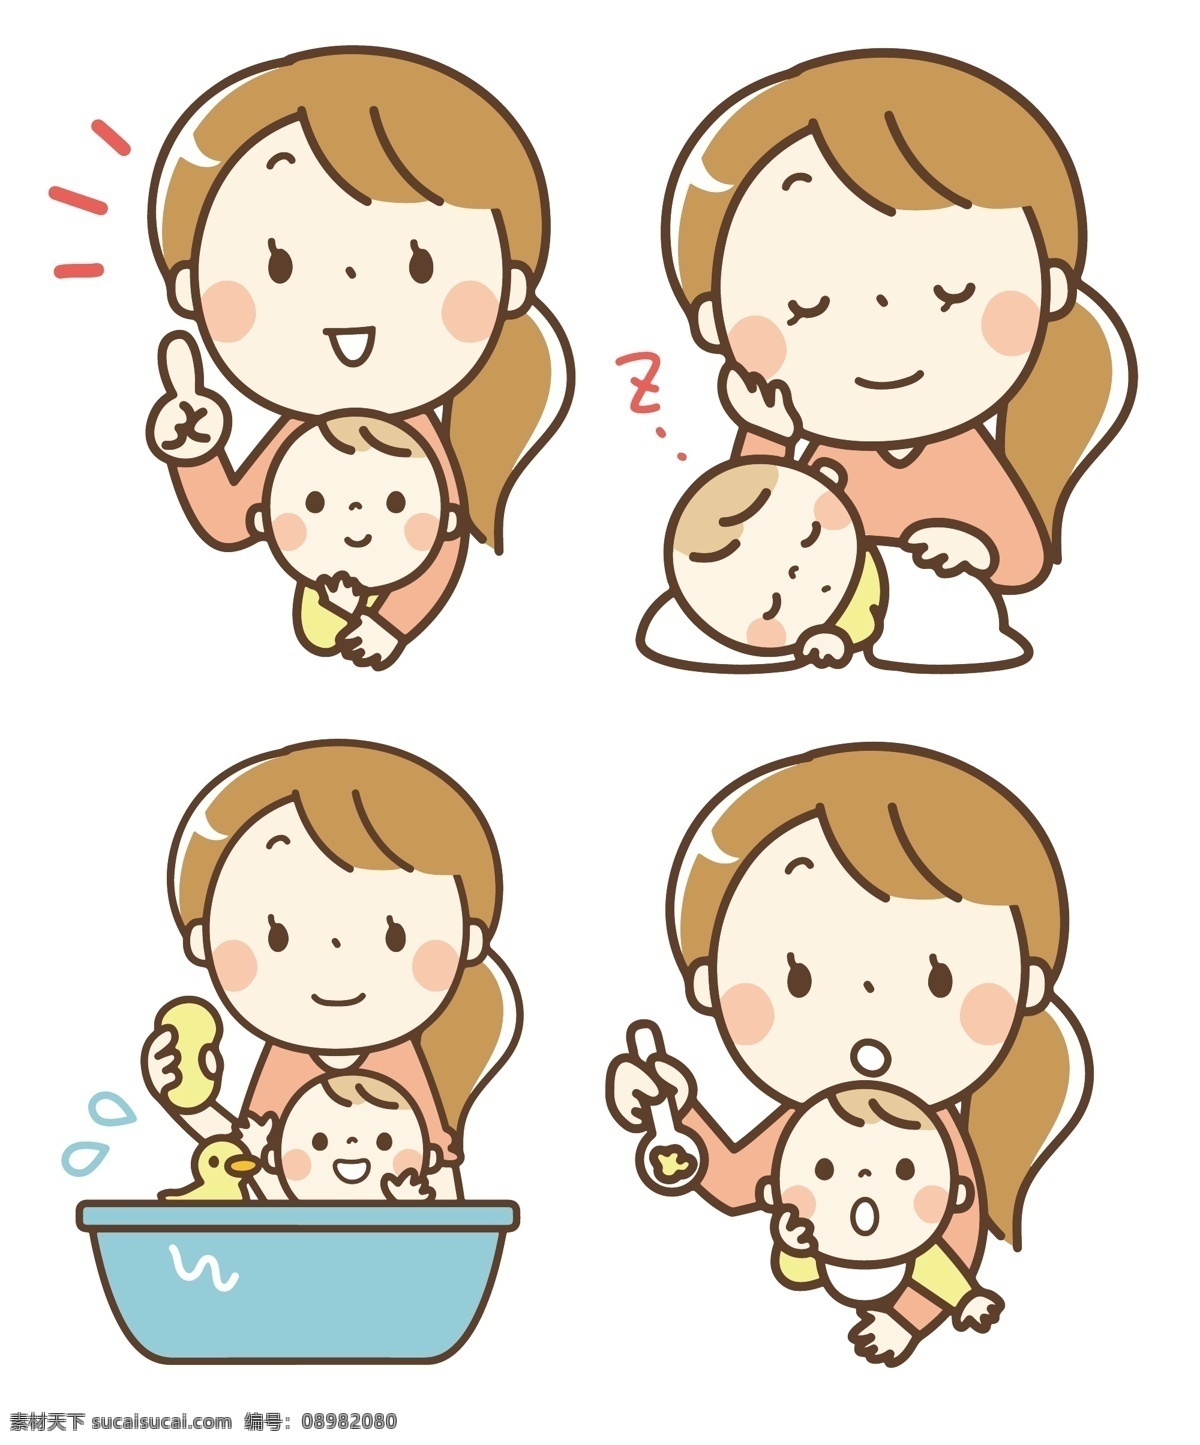 母亲 婴儿 妈妈 喂食 育婴 睡觉 洗澡 开心 表情 卡通 动漫卡通插图 动漫动画